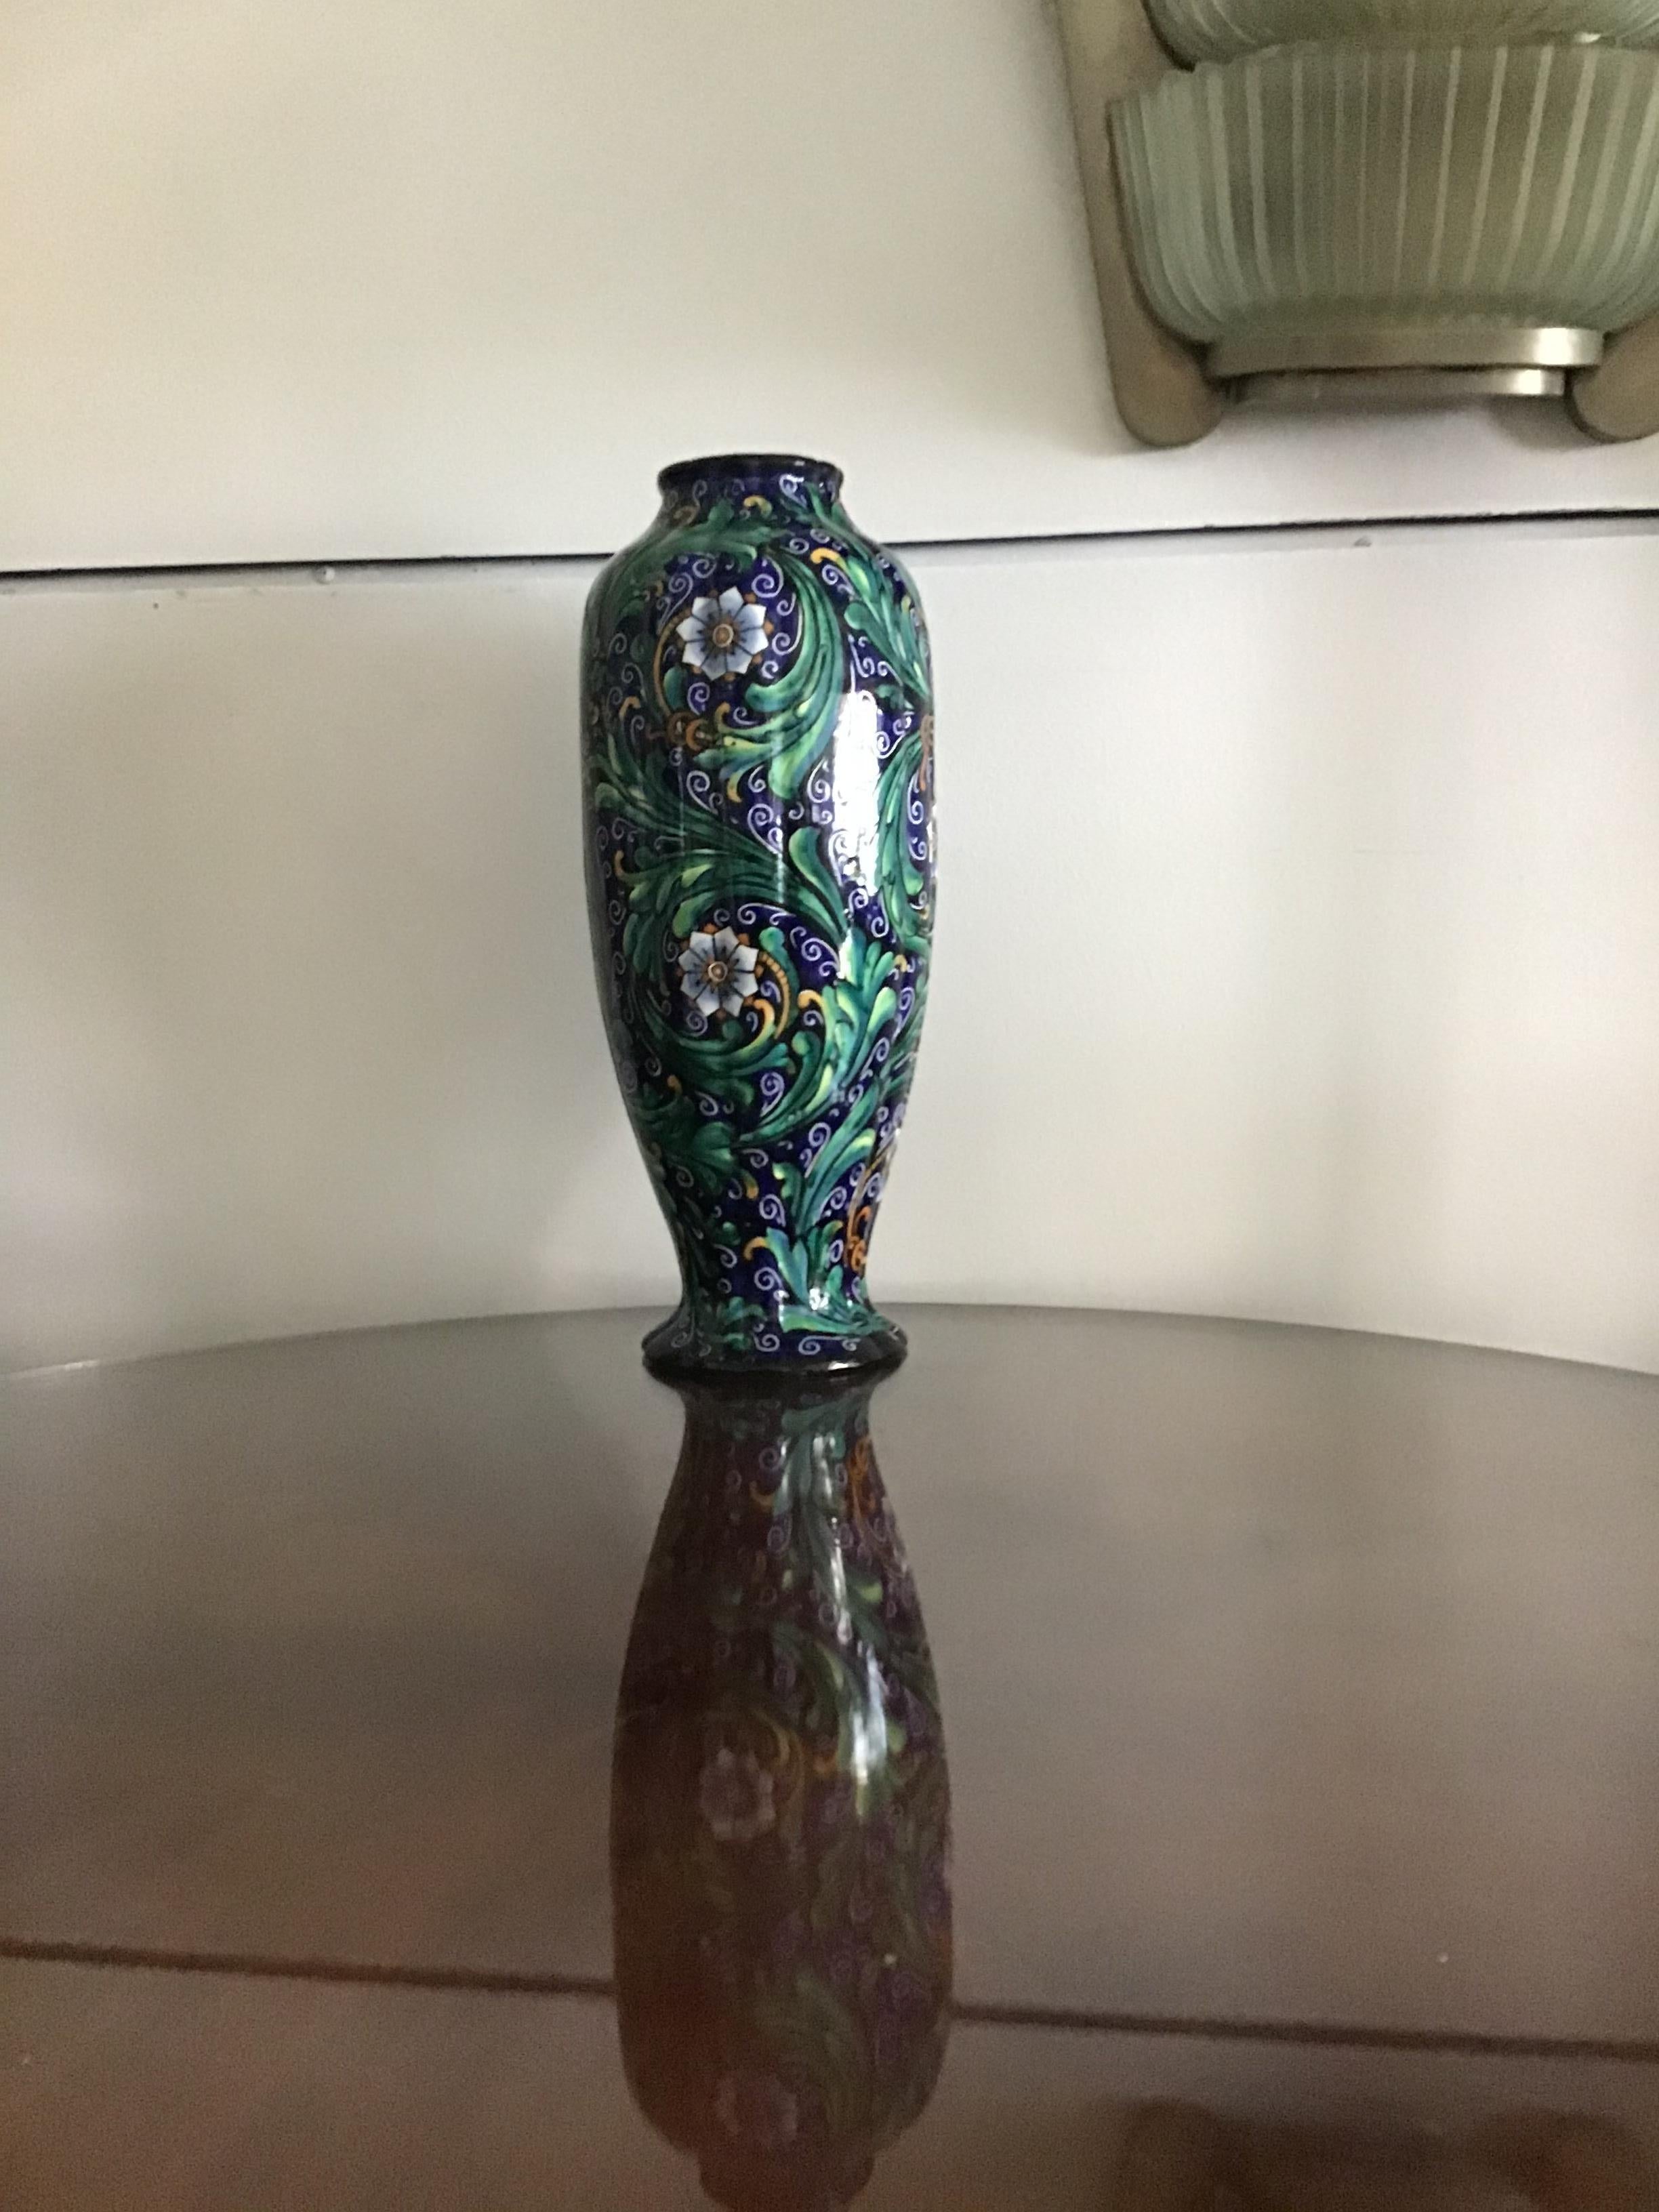 Ferruccio Mengaroni Vase Ceramic 1940 Italy For Sale 1